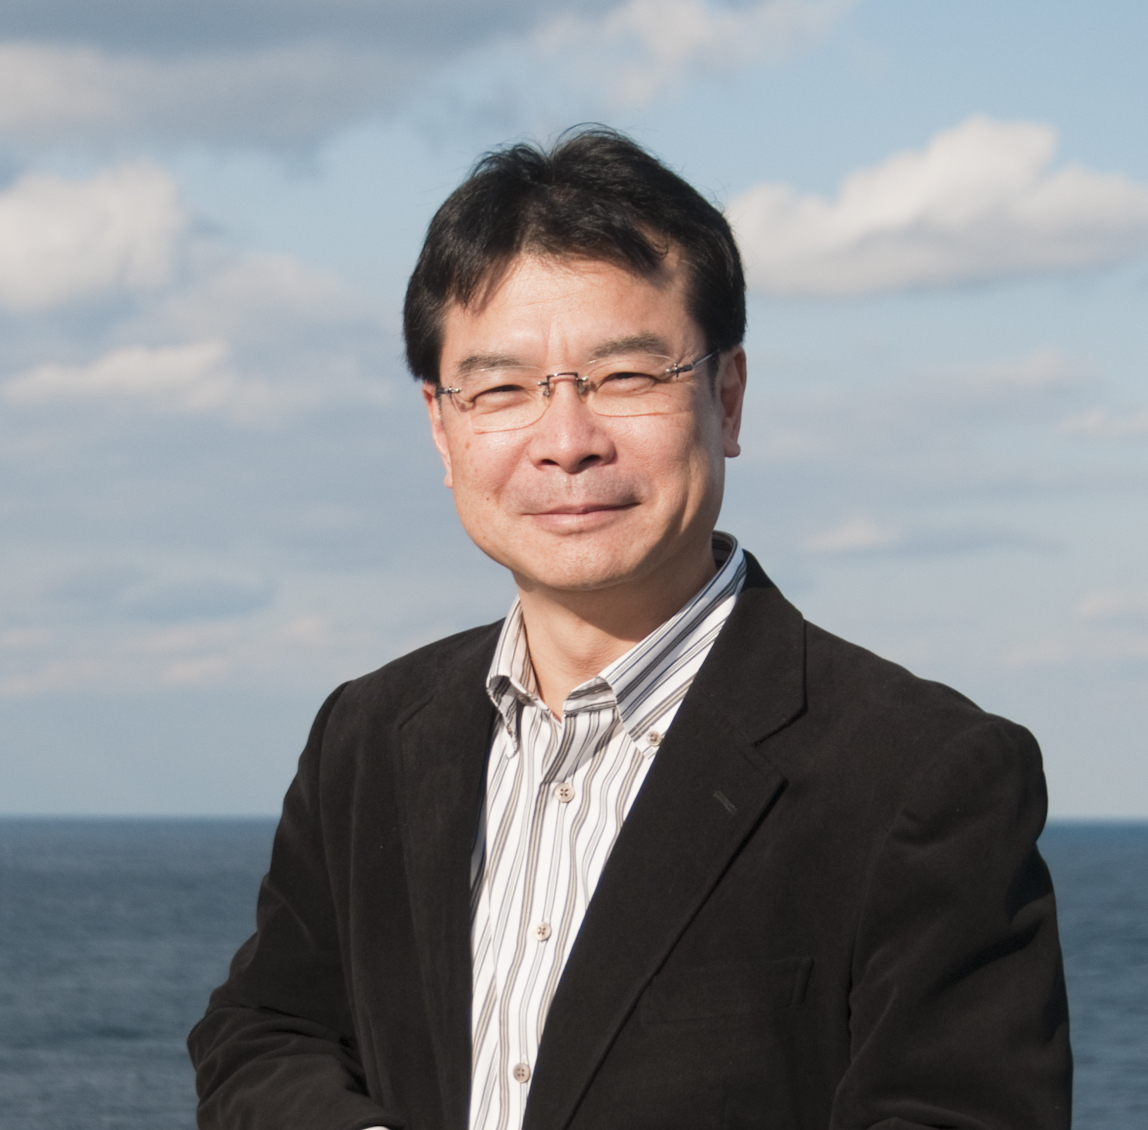 Mr. Tatsuya Yoshioka